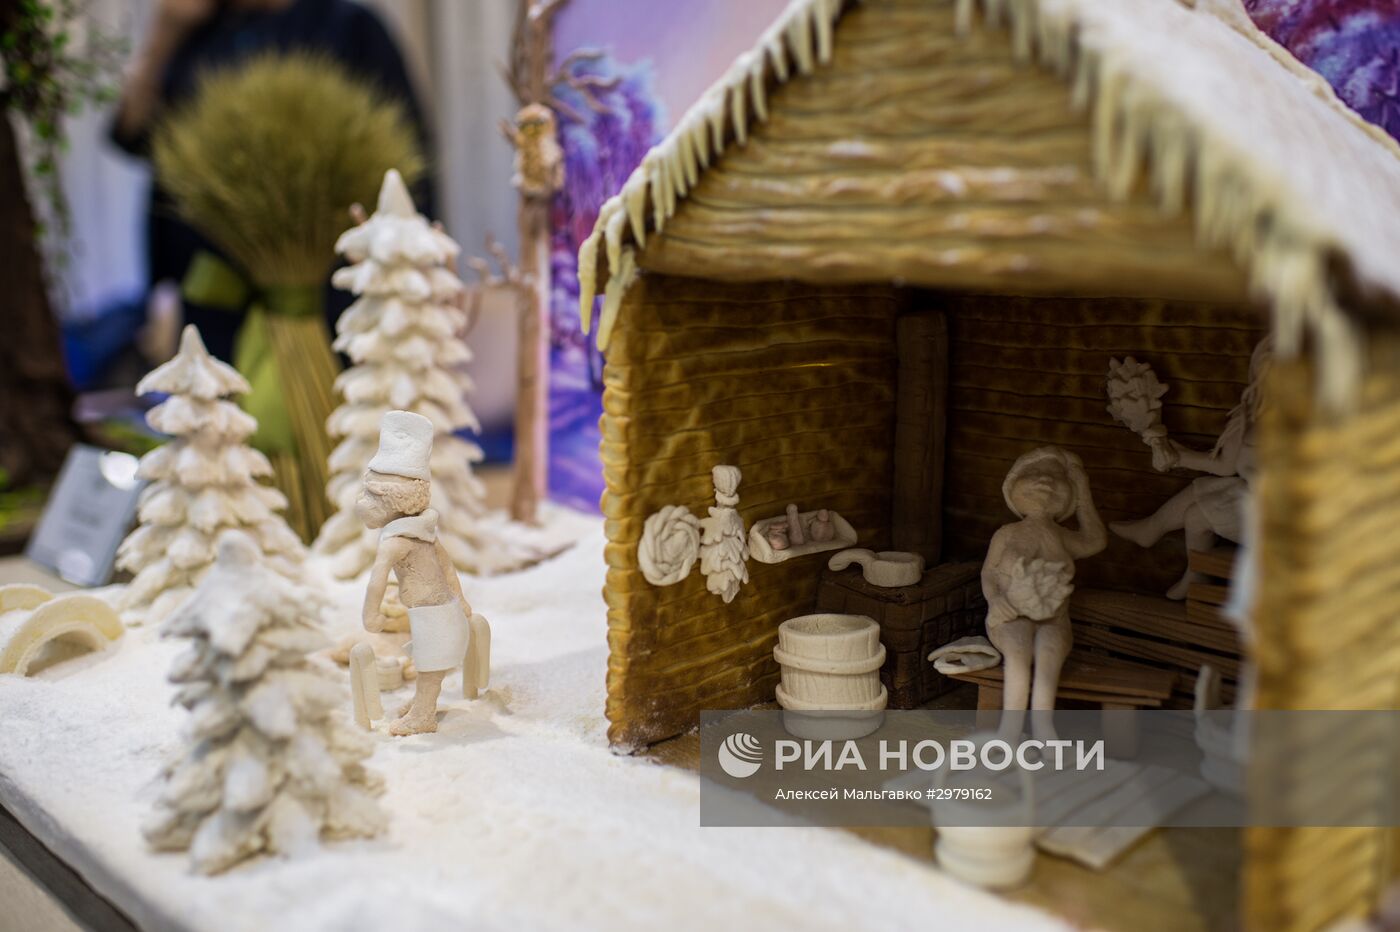 Агротехническая выставка в Омске